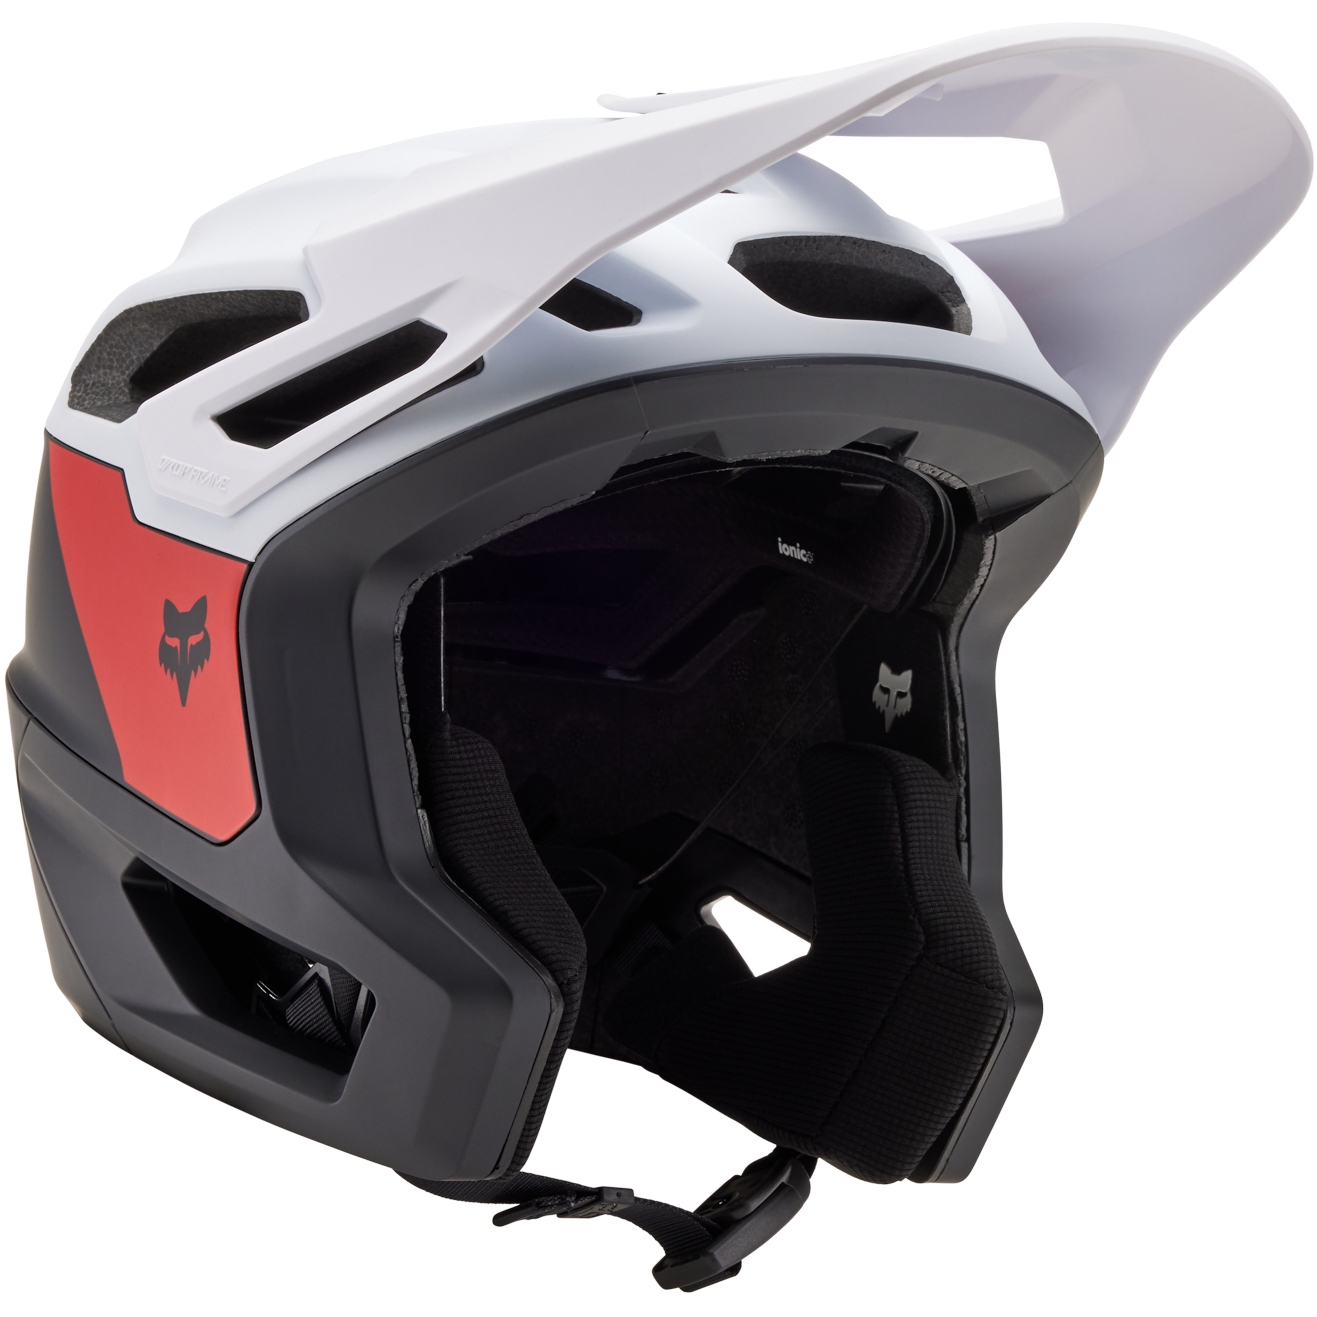 Produktbild von FOX Dropframe Pro Trail Helm - Nyf - schwarz/weiß